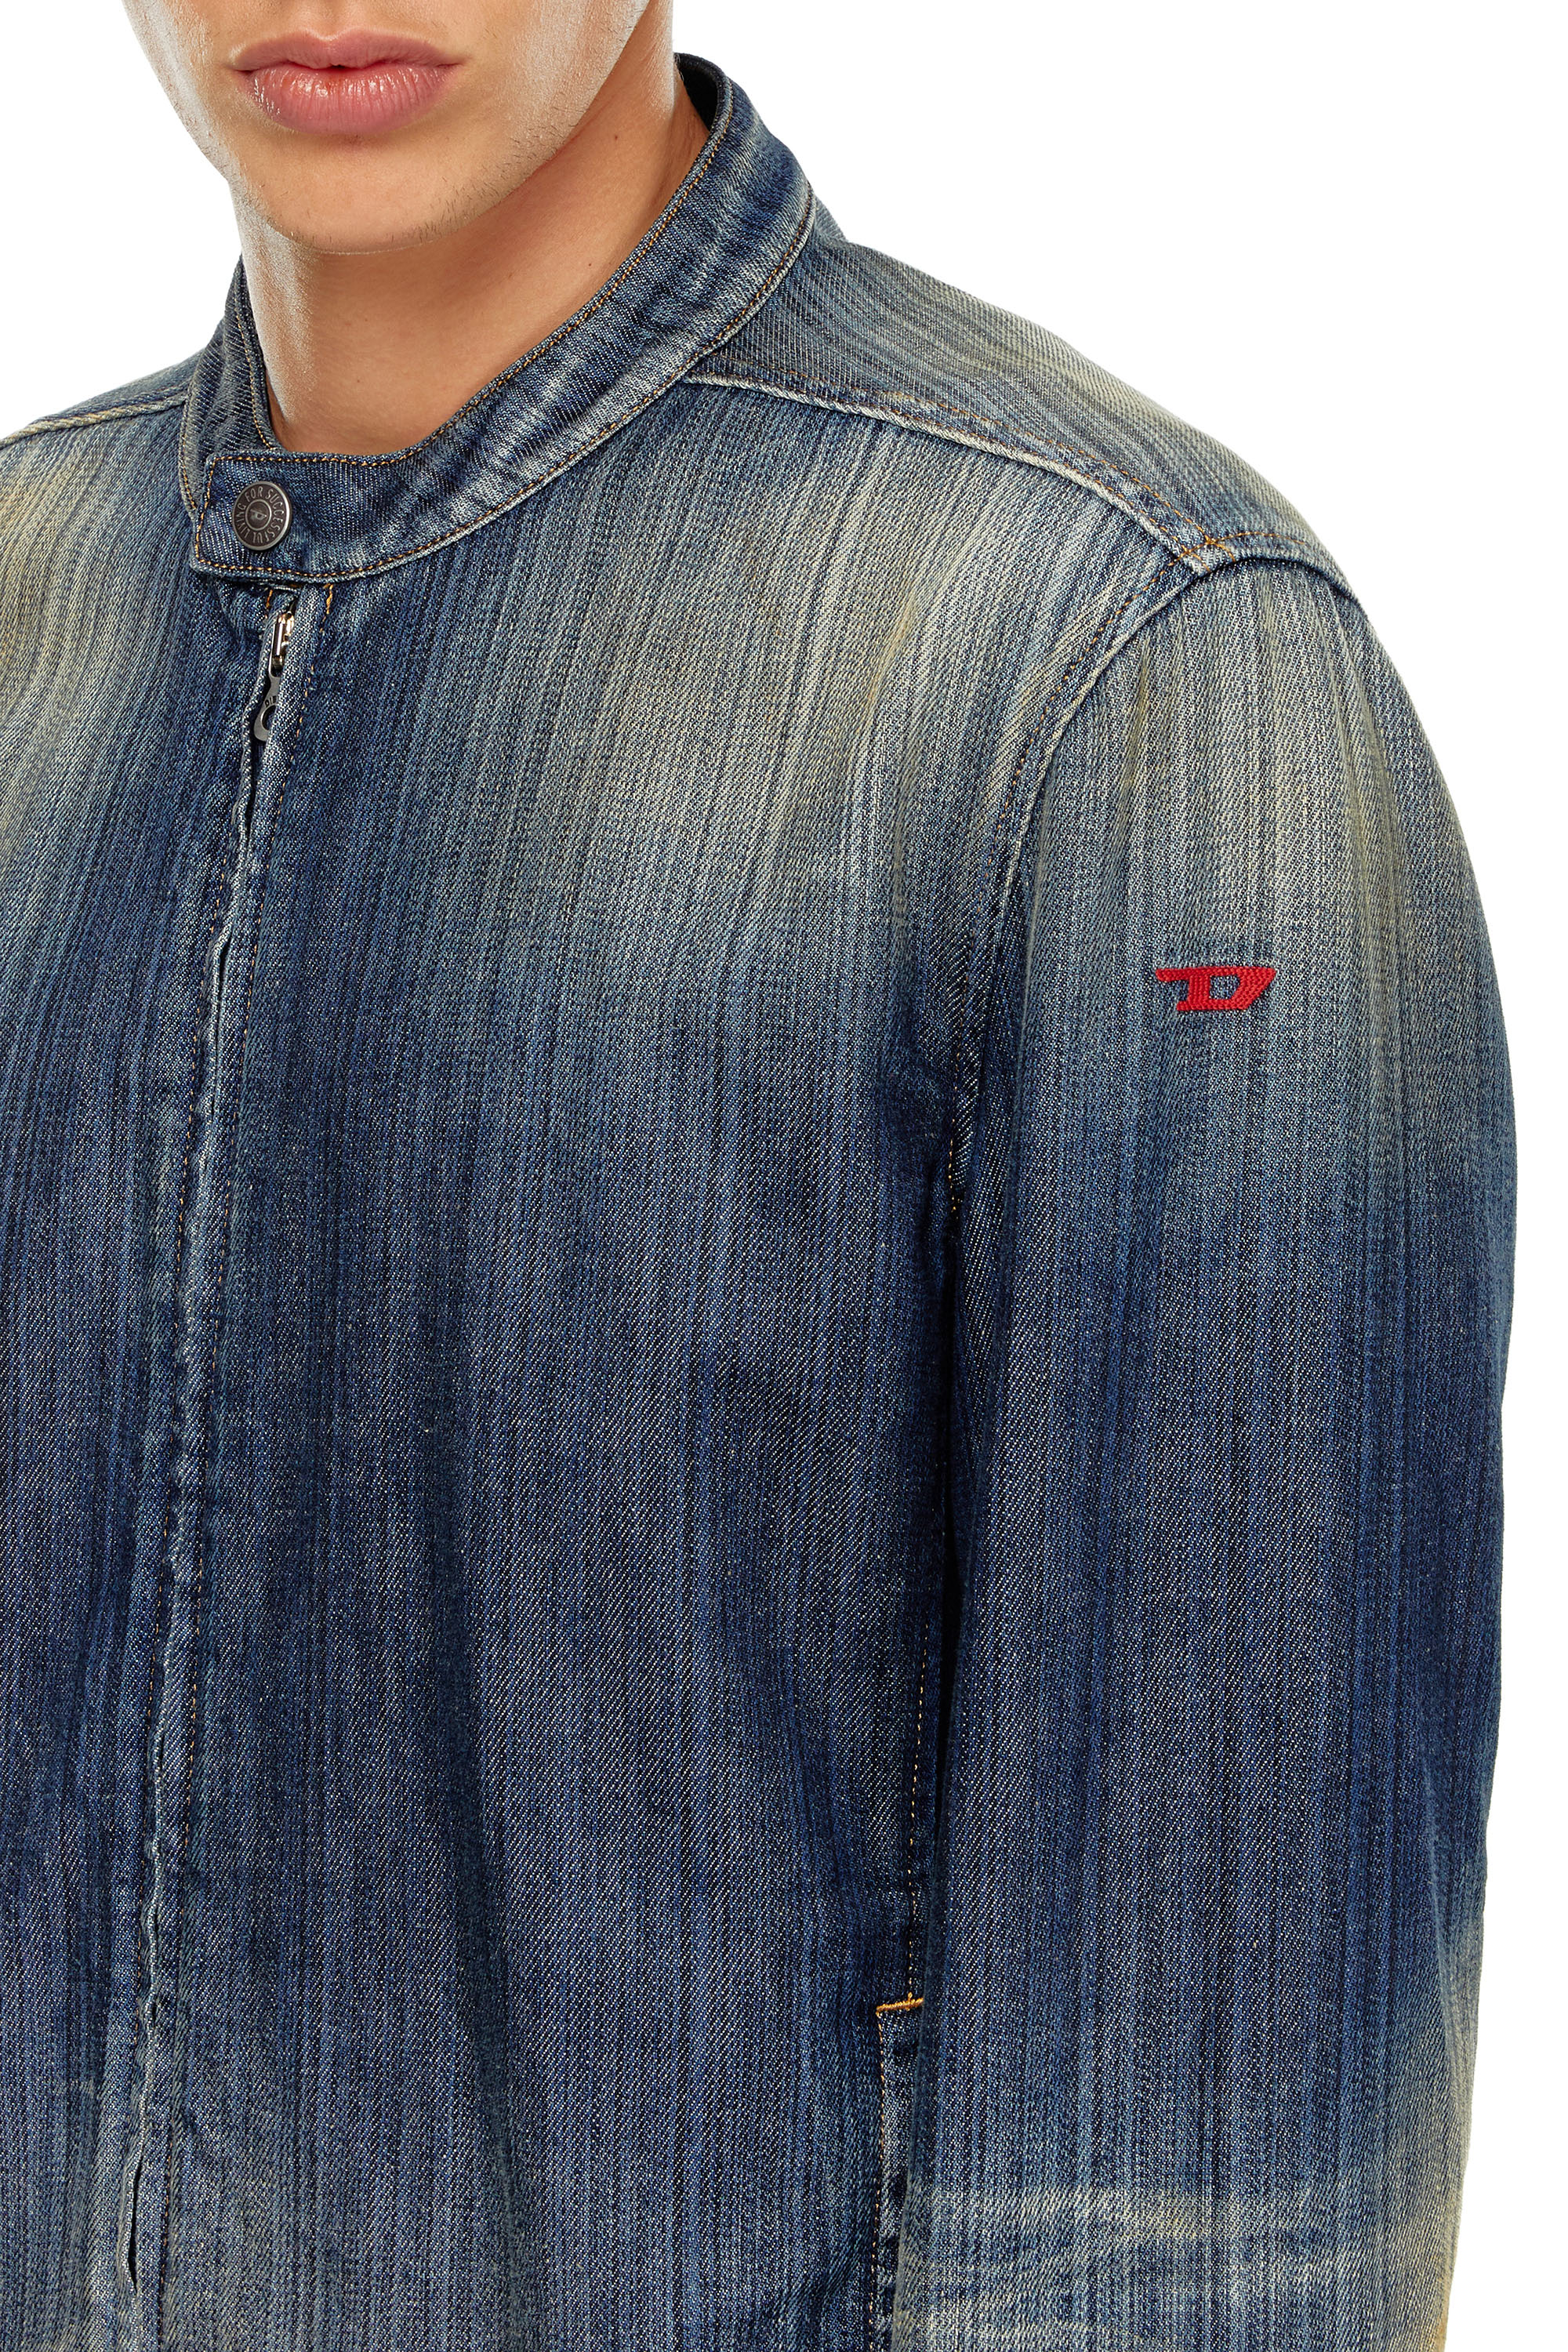 Diesel - D-GLORY, Man Moto jacket in streaky denim in Blue - Image 5